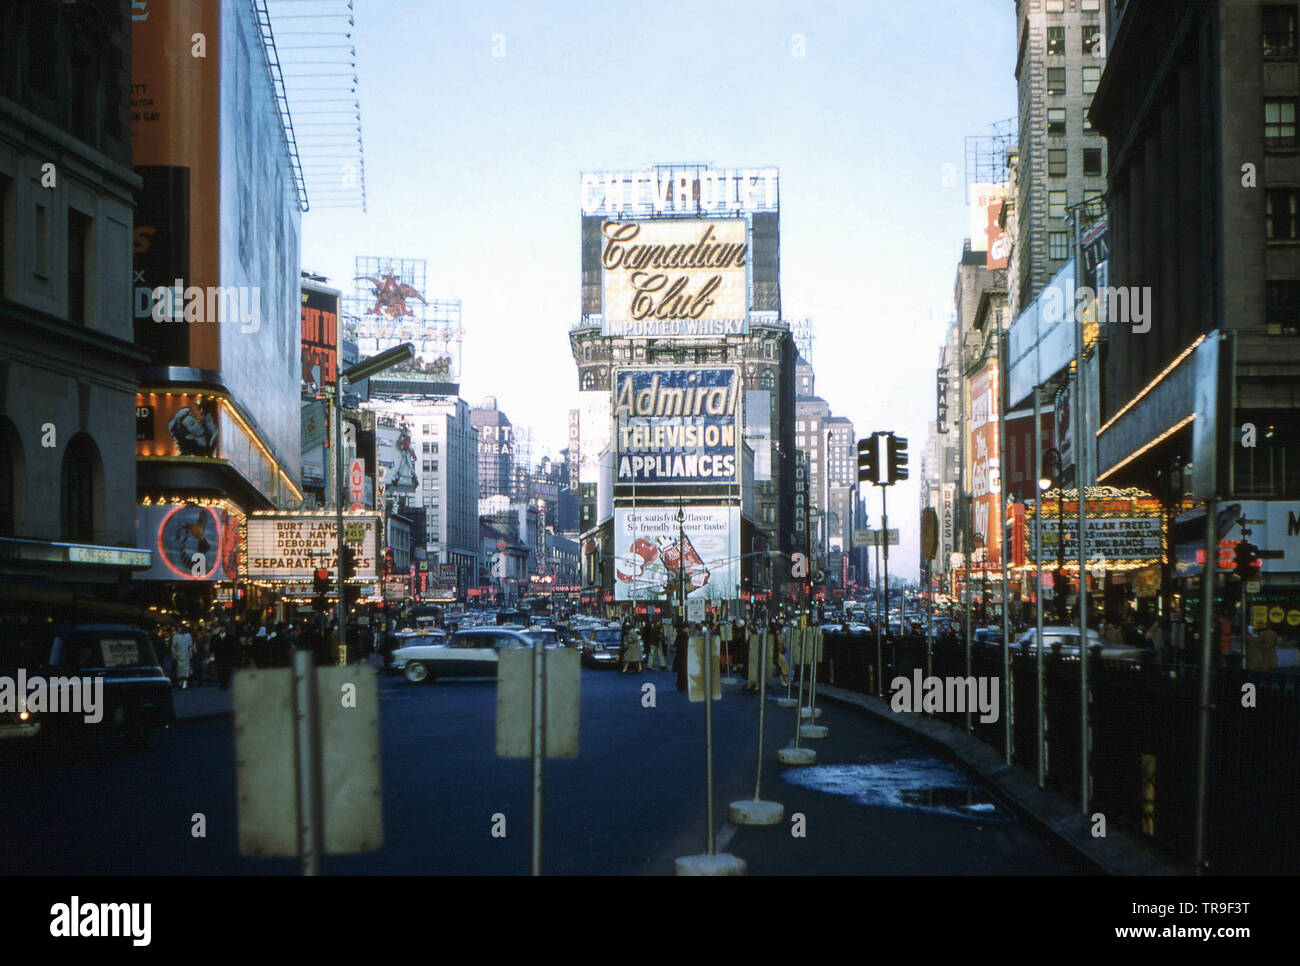 NEW YORK NEW YORK - Circa 1959: Times Square come appariva intorno a gennaio, 1959, scandite da un vecchio Kodachrome diapositiva. Foto Stock